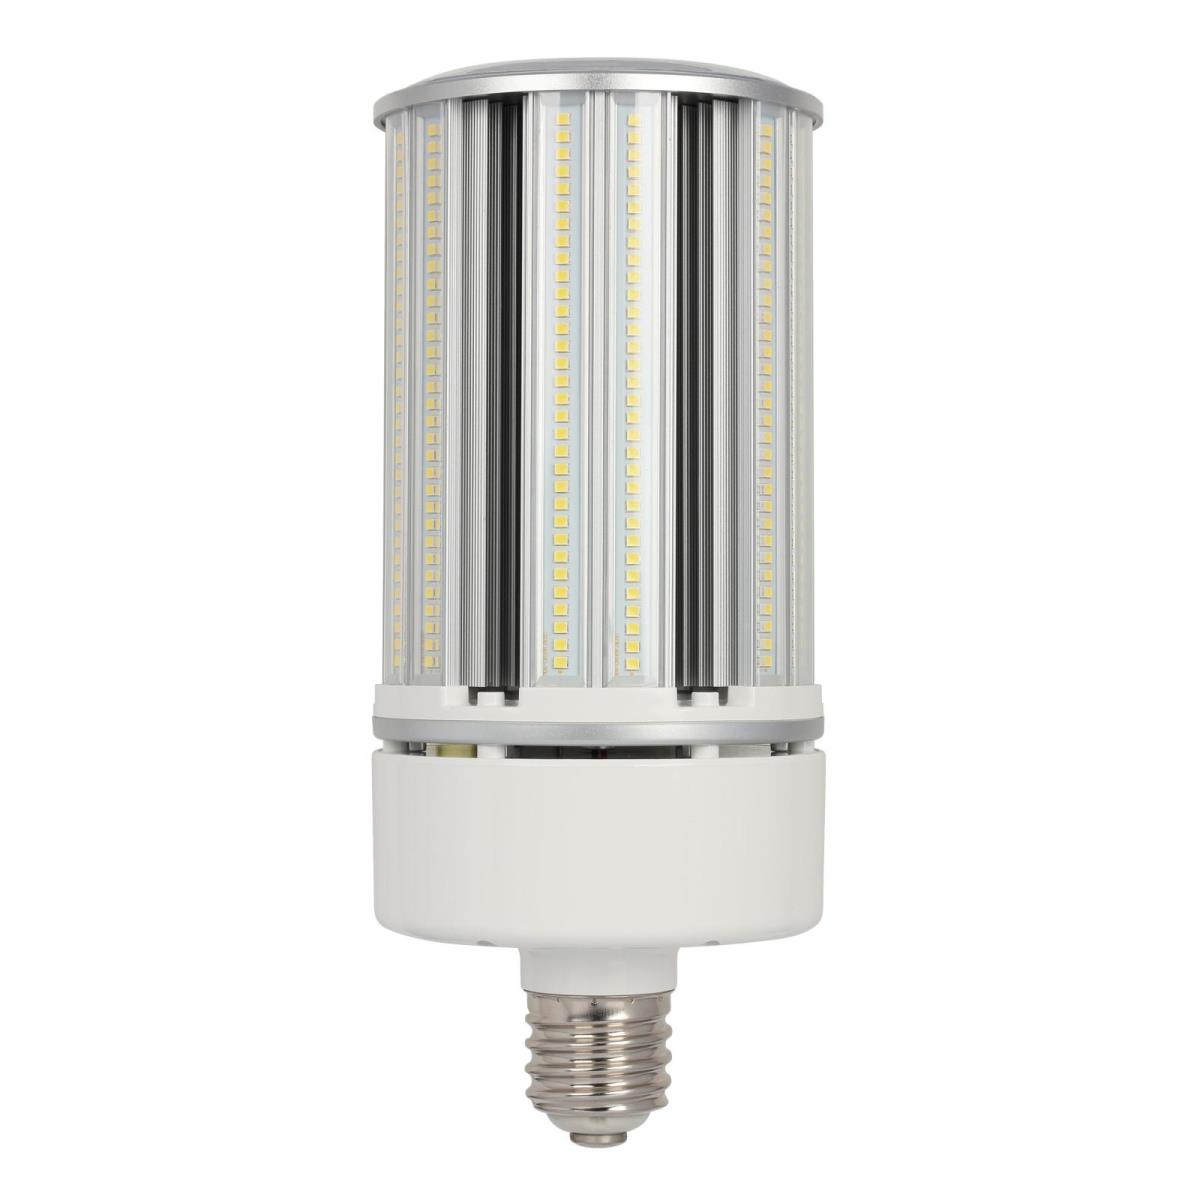 4516700 100w 120-277 V T38 Led Light Bulb For 5000k E39 Mogul Base